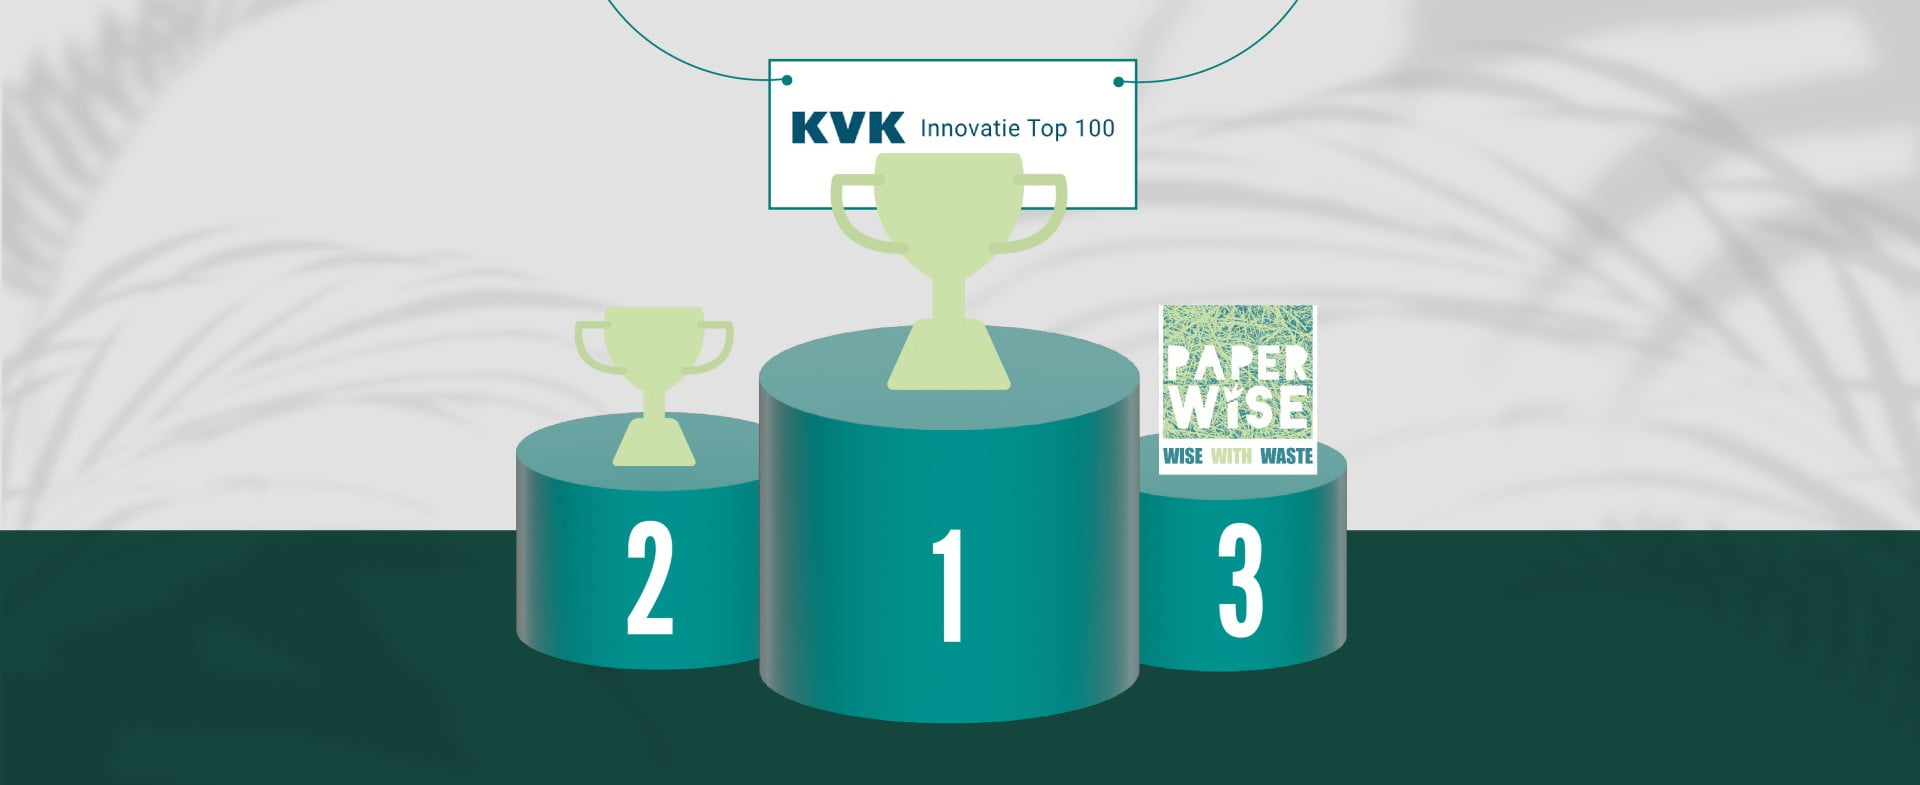 PAPERWISE SE HISSE À LA 3E PLACE DU CLASSEMENT KVK INNOVATION TOP 100